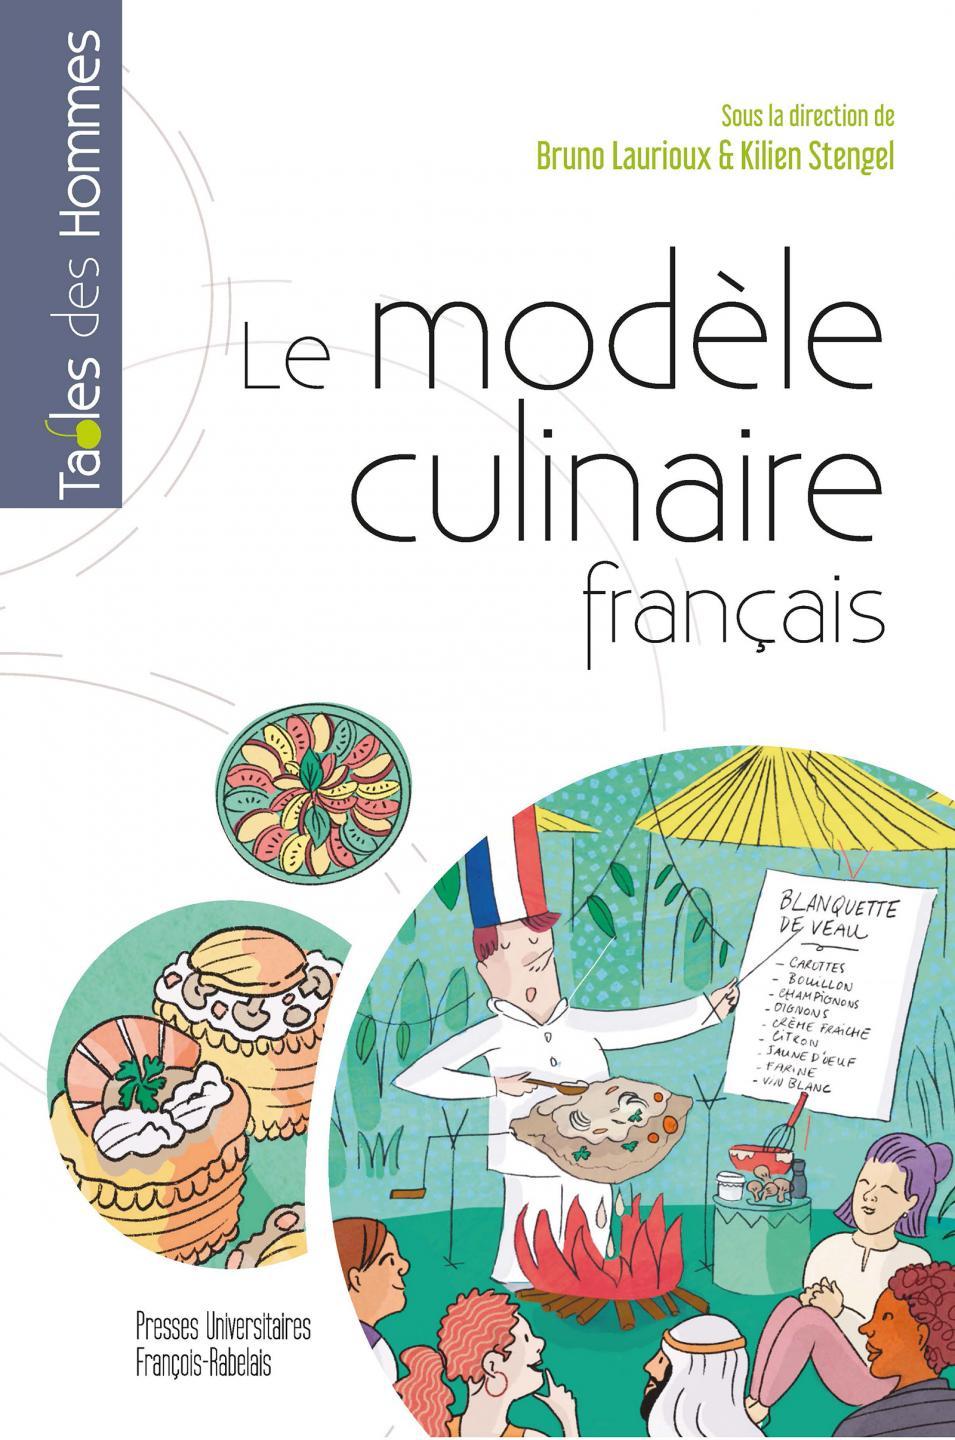 Le modèle culinaire français (dir. B. Laurioux & K. Stengel)